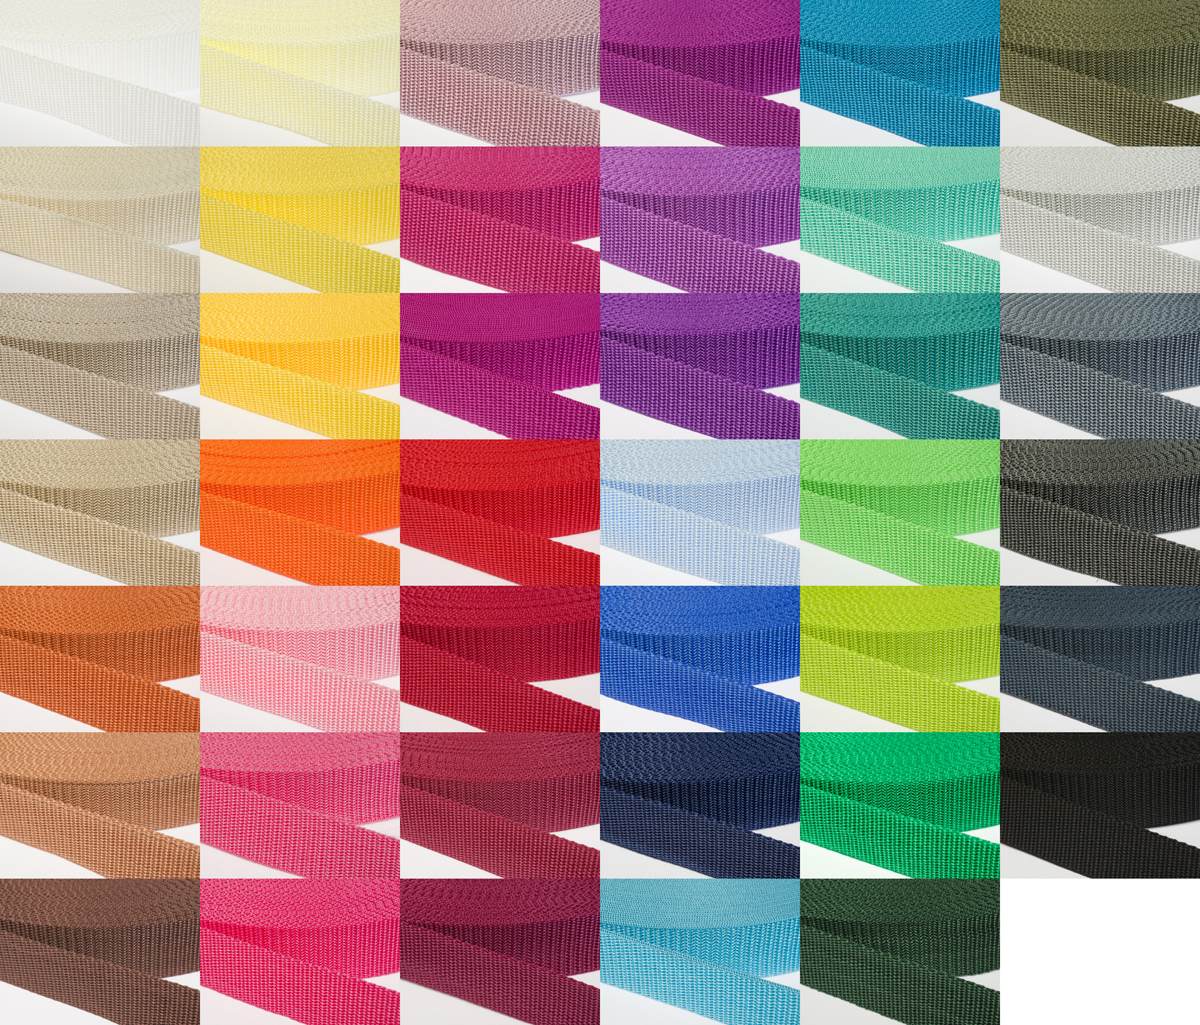 Gurtband 30mm breit aus Polypropylen in 41 Farben 34 - grün 6 Meter